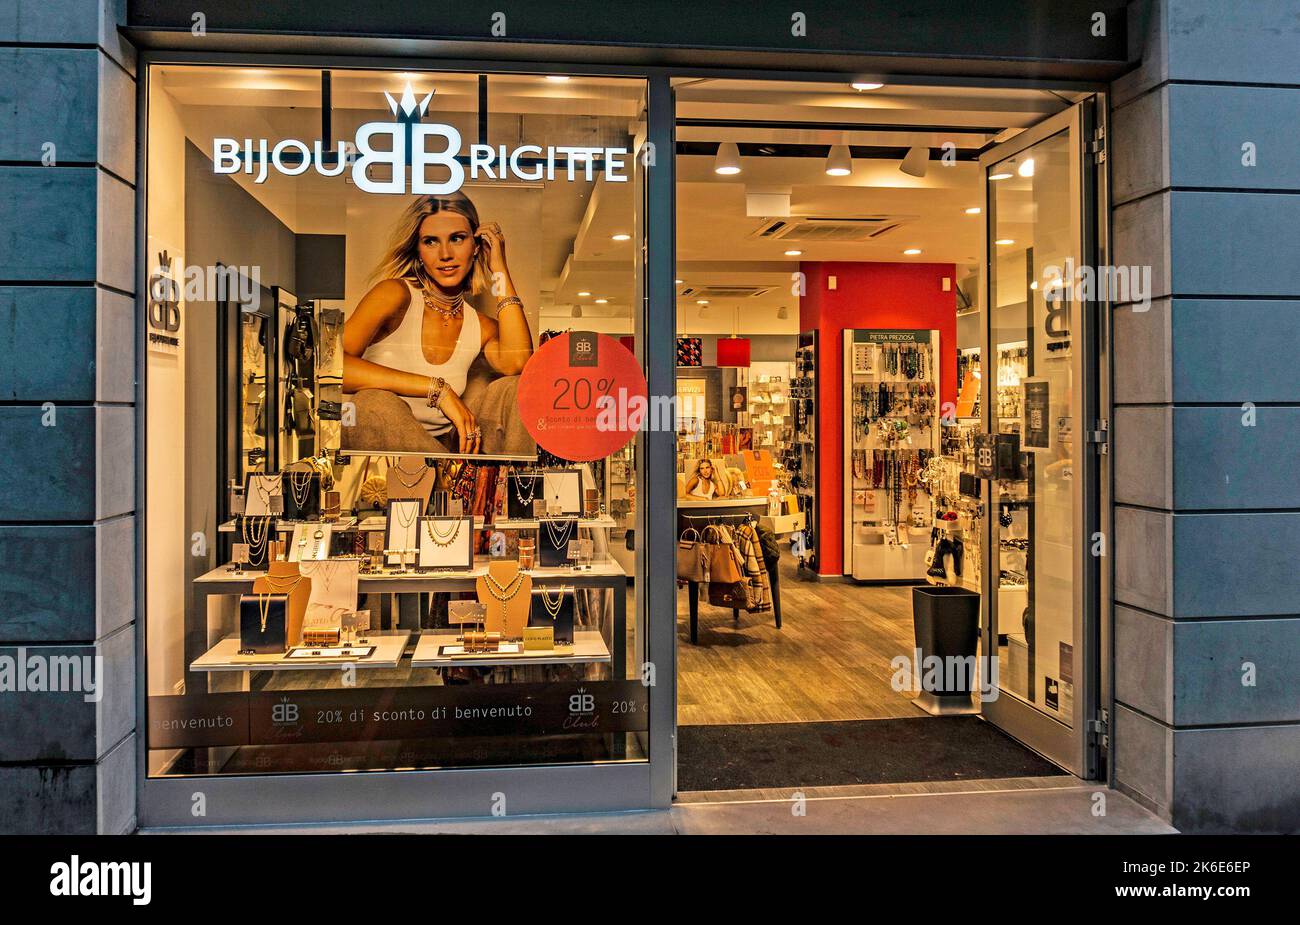 Ein Bijou Brigette Bekleidungszubehör-Geschäft in der Via Roma, Lecco, Italien. Stockfoto